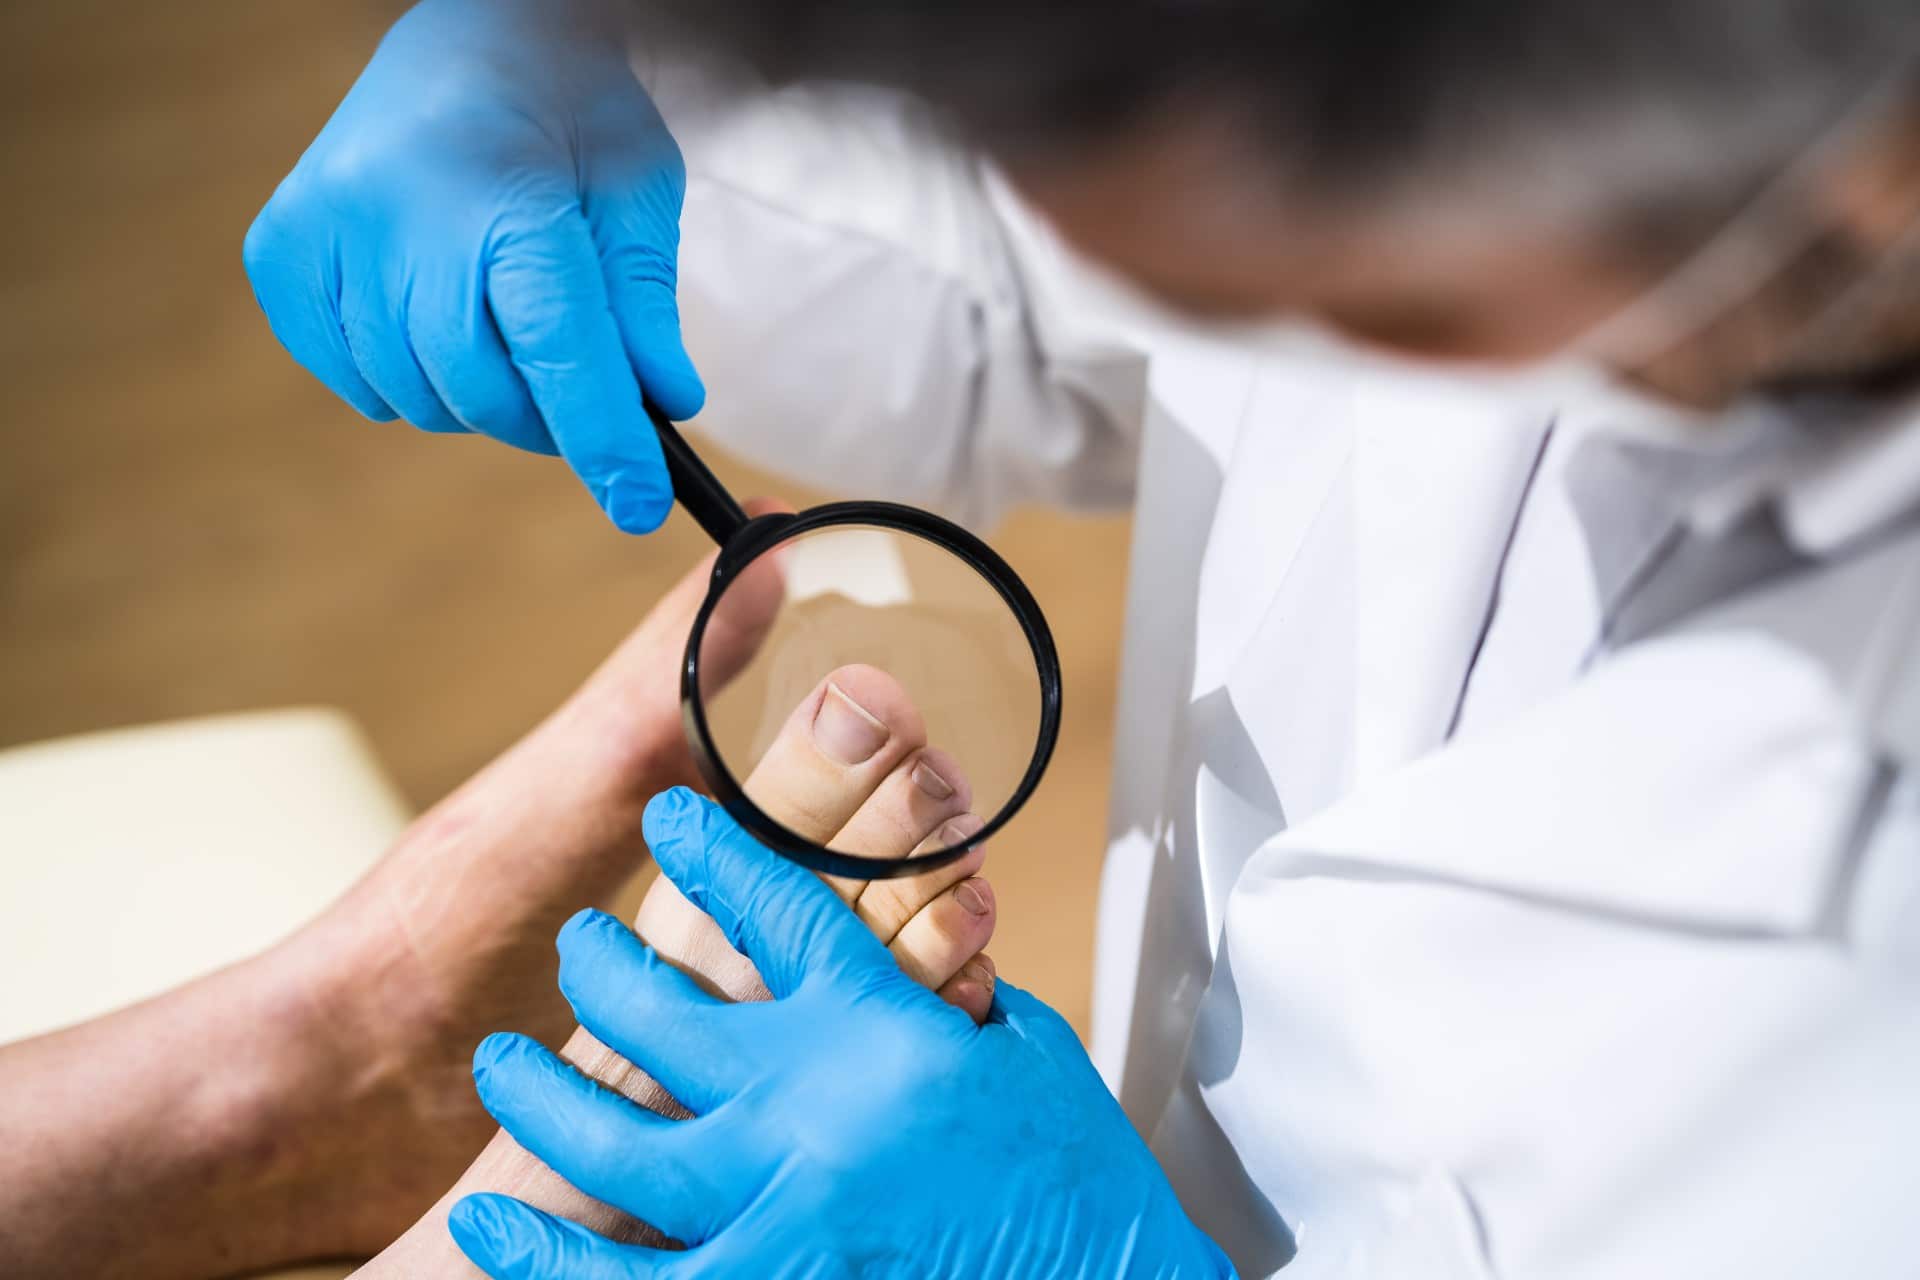 a doctor inspecting an ingrown toenail